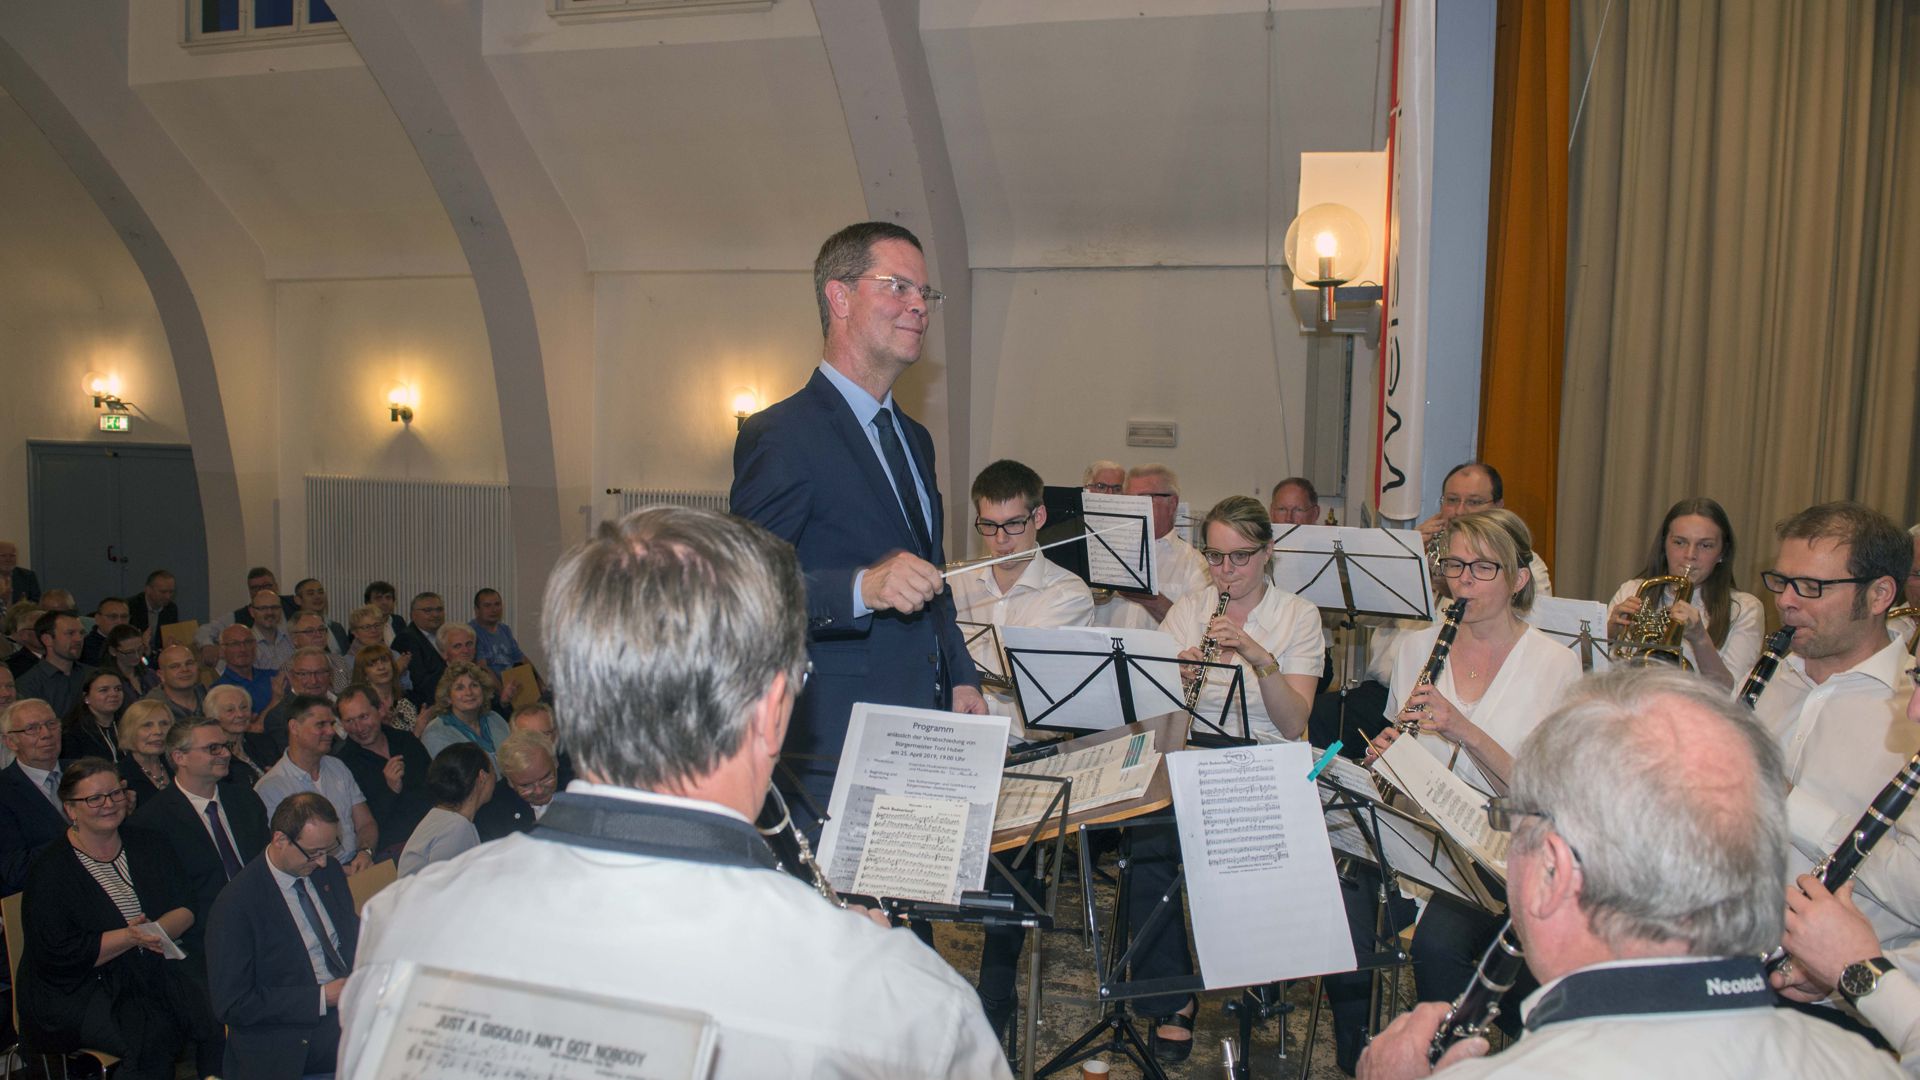 Den Taktstock wird Toni Huber weiterhin in der Hand halten, ab Mai als Landrat in Rastatt. Bei seiner Verabschiedung als Bürgermeister dirigierte er mit großer Freude das vereinigte Musikensemble Weisenbach/Au.